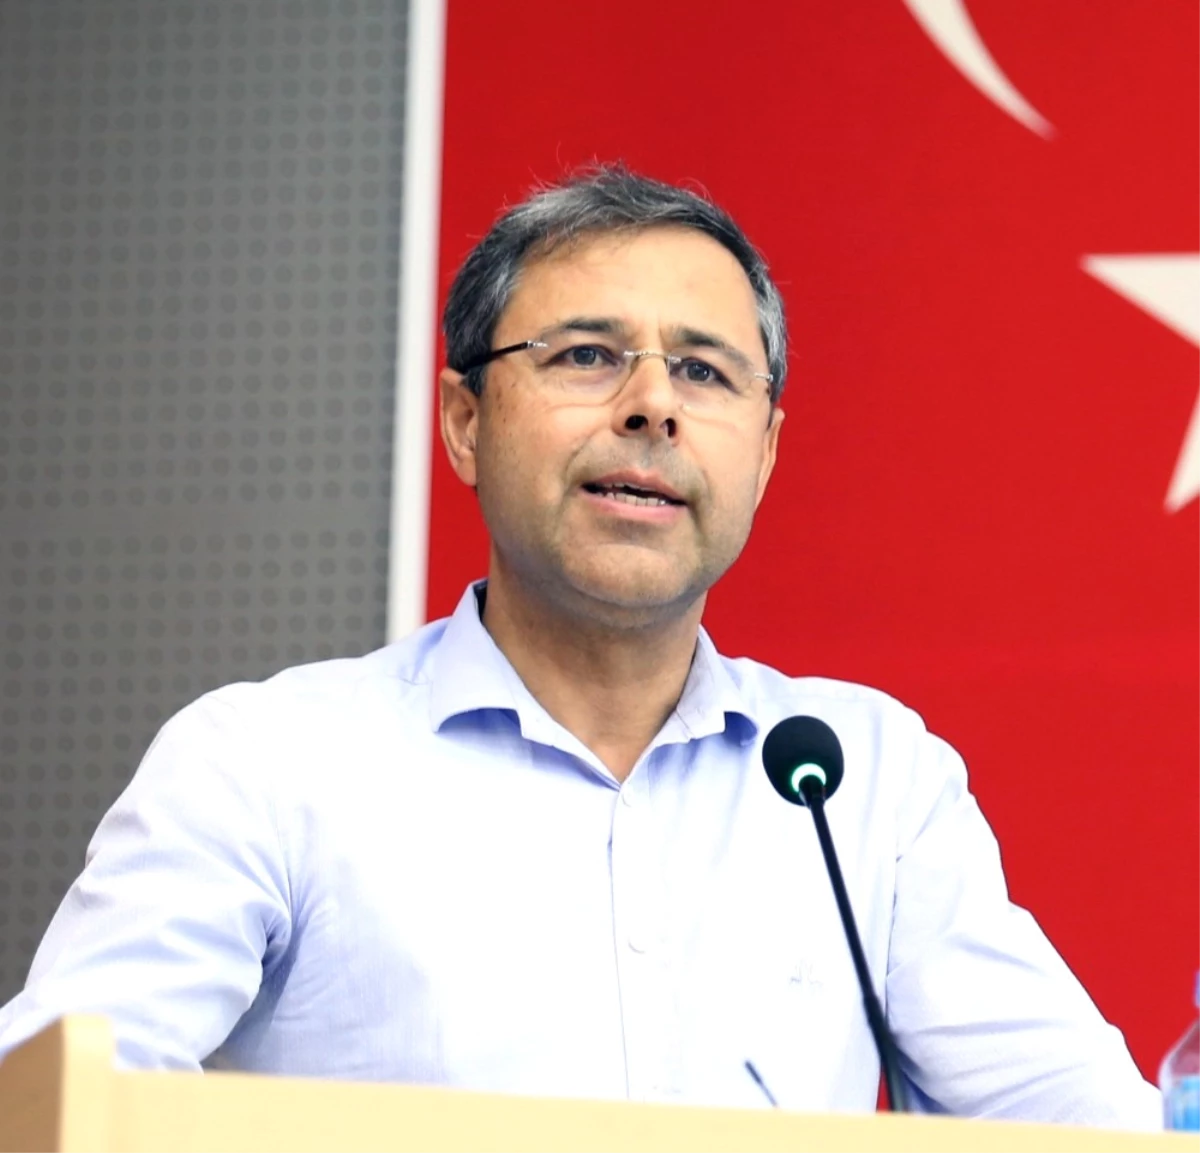 Mutso Başkanı Ercan: "Ülke Ekonomisinin Temelleri Sağlam"